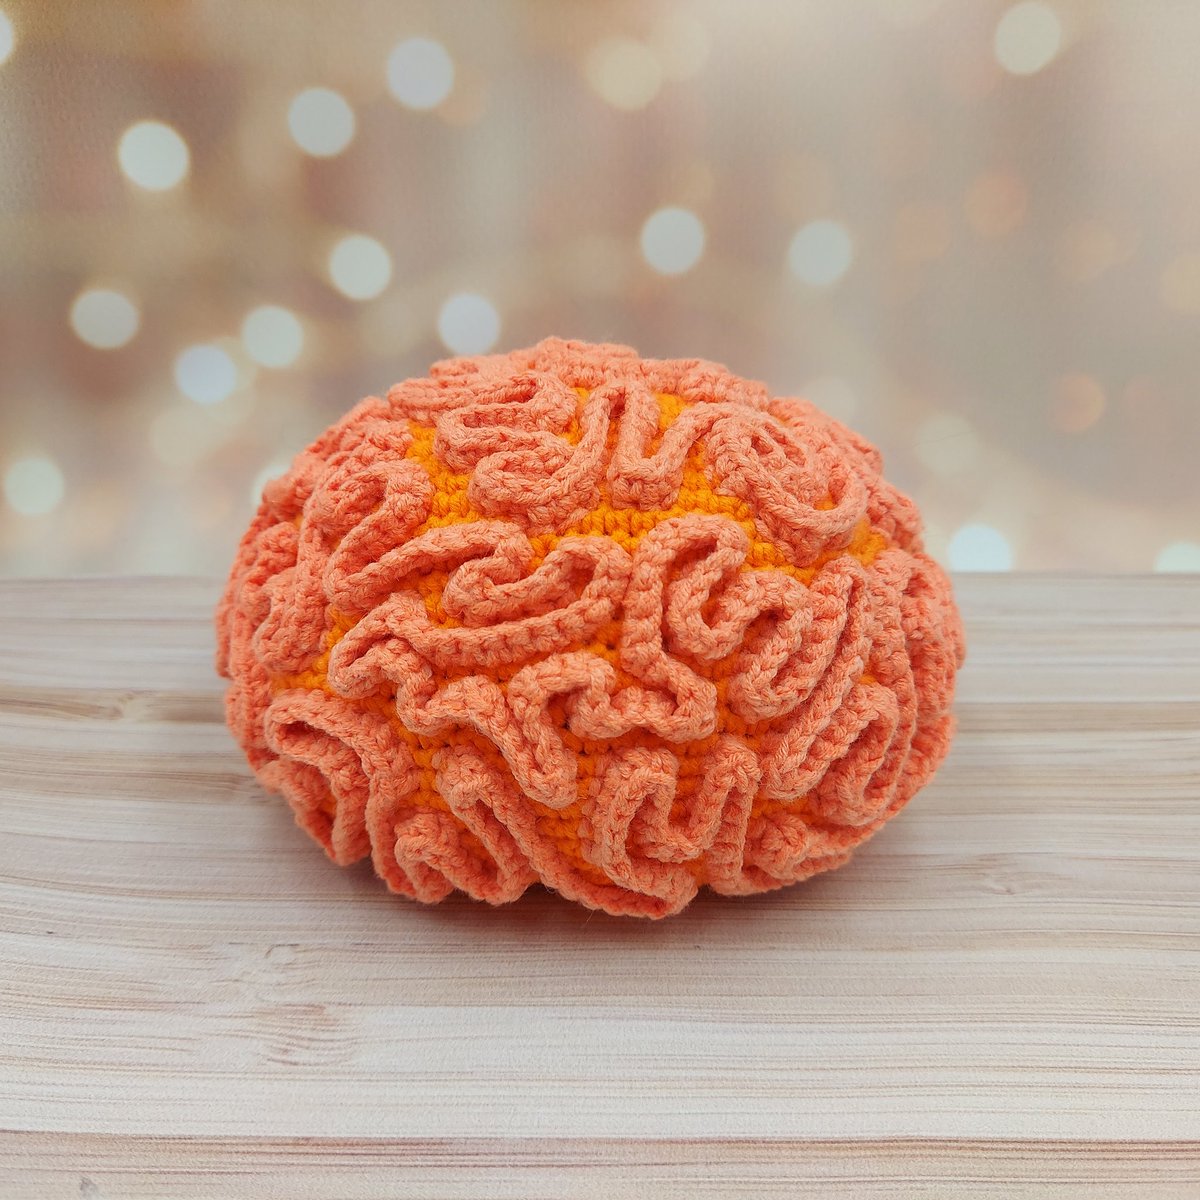 crochet brain coral in the aquarium
#coralreef #crochetaquarium #braincoral #crochetdecoration